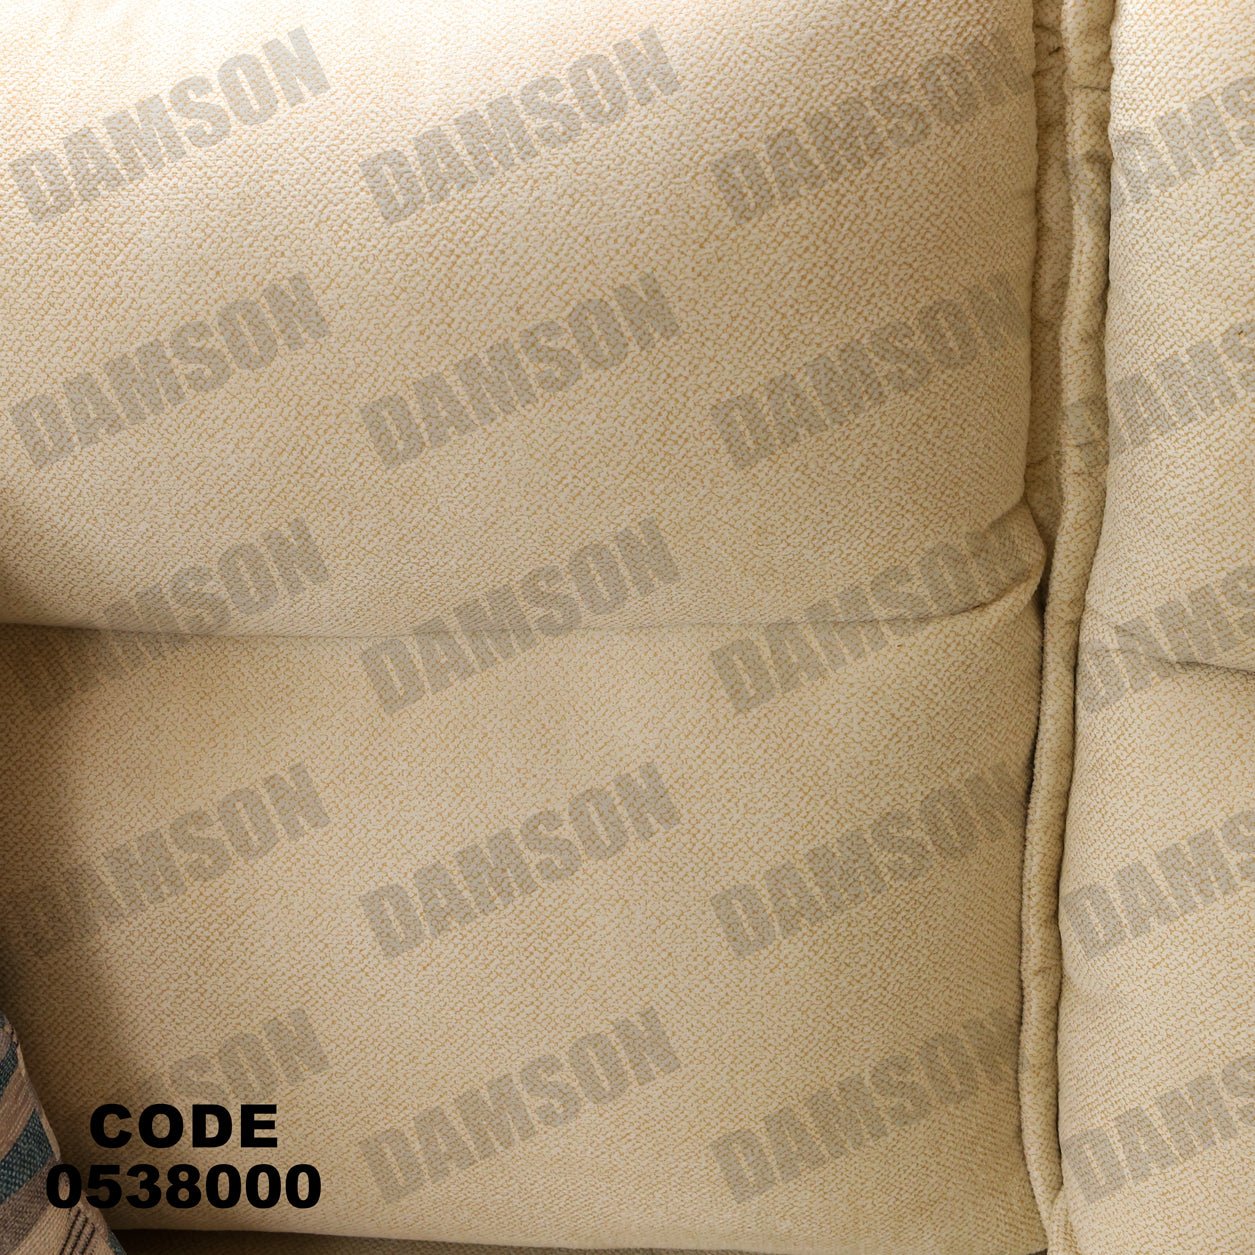 انترية 380 - Damson Furnitureانترية 380